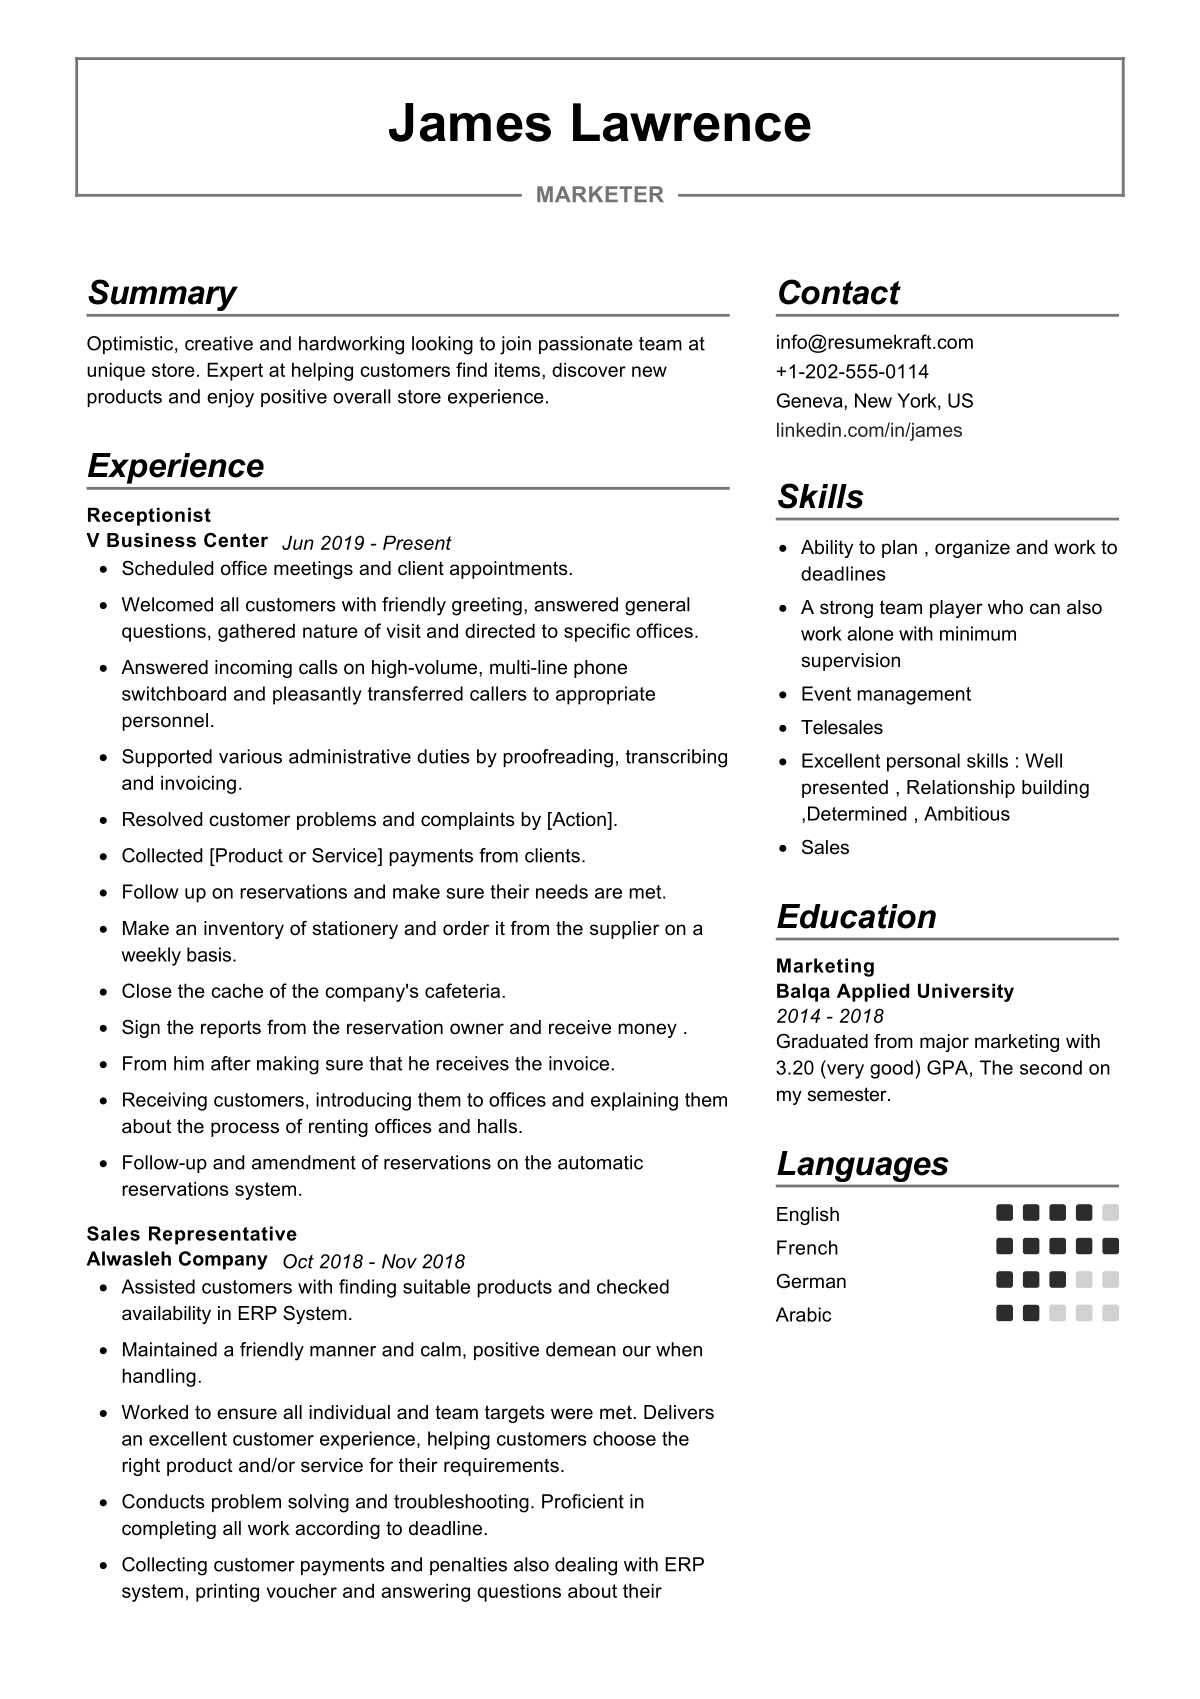 resume writing market